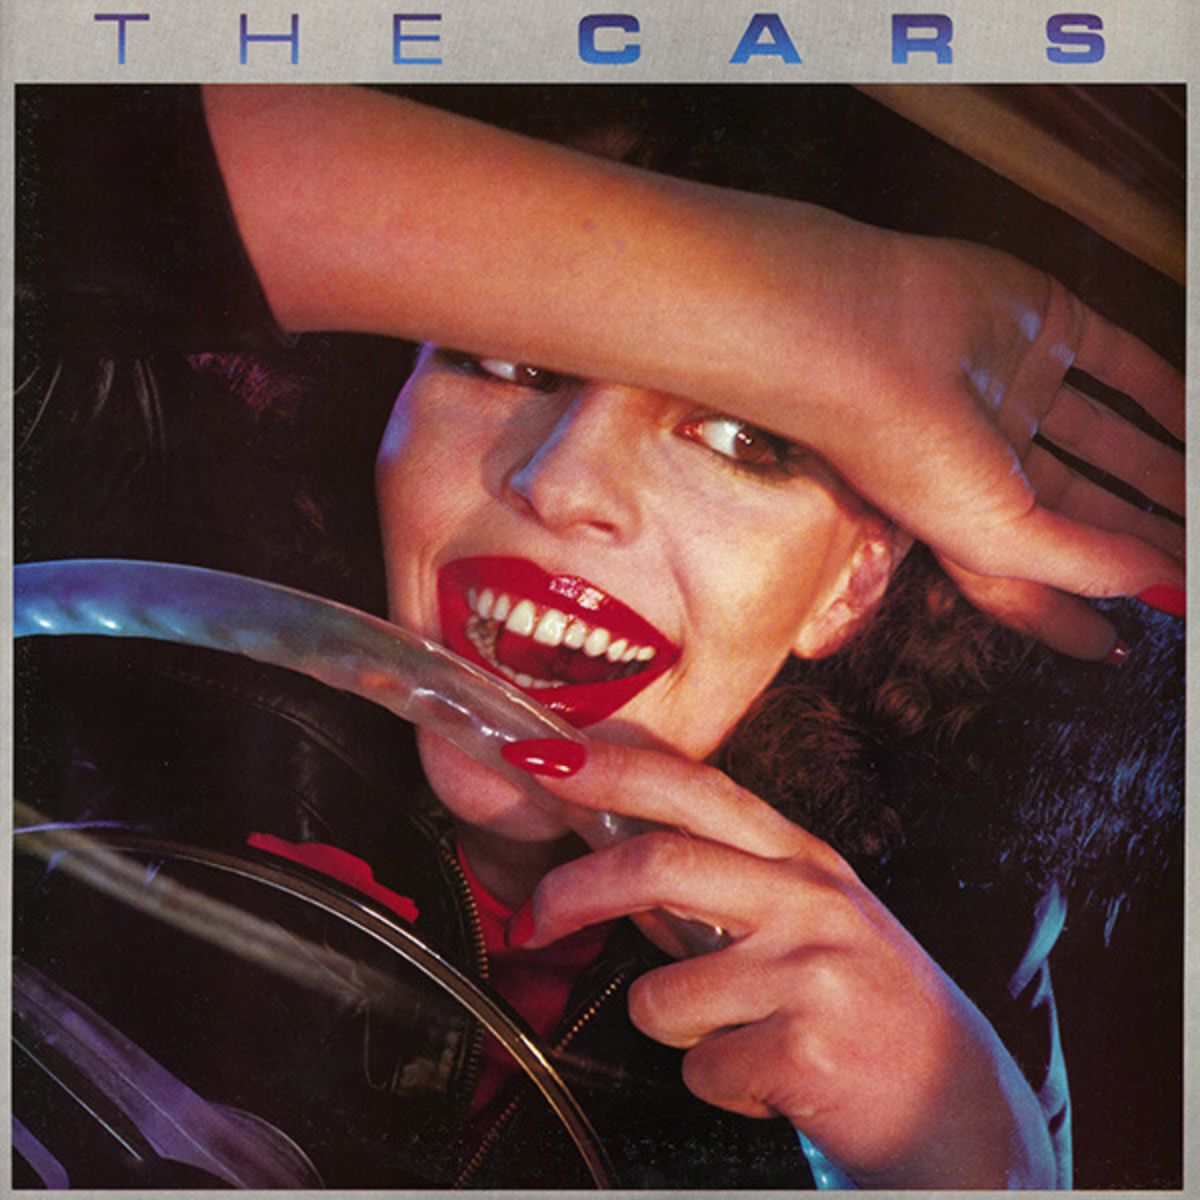 Le premier album du même nom des Cars.